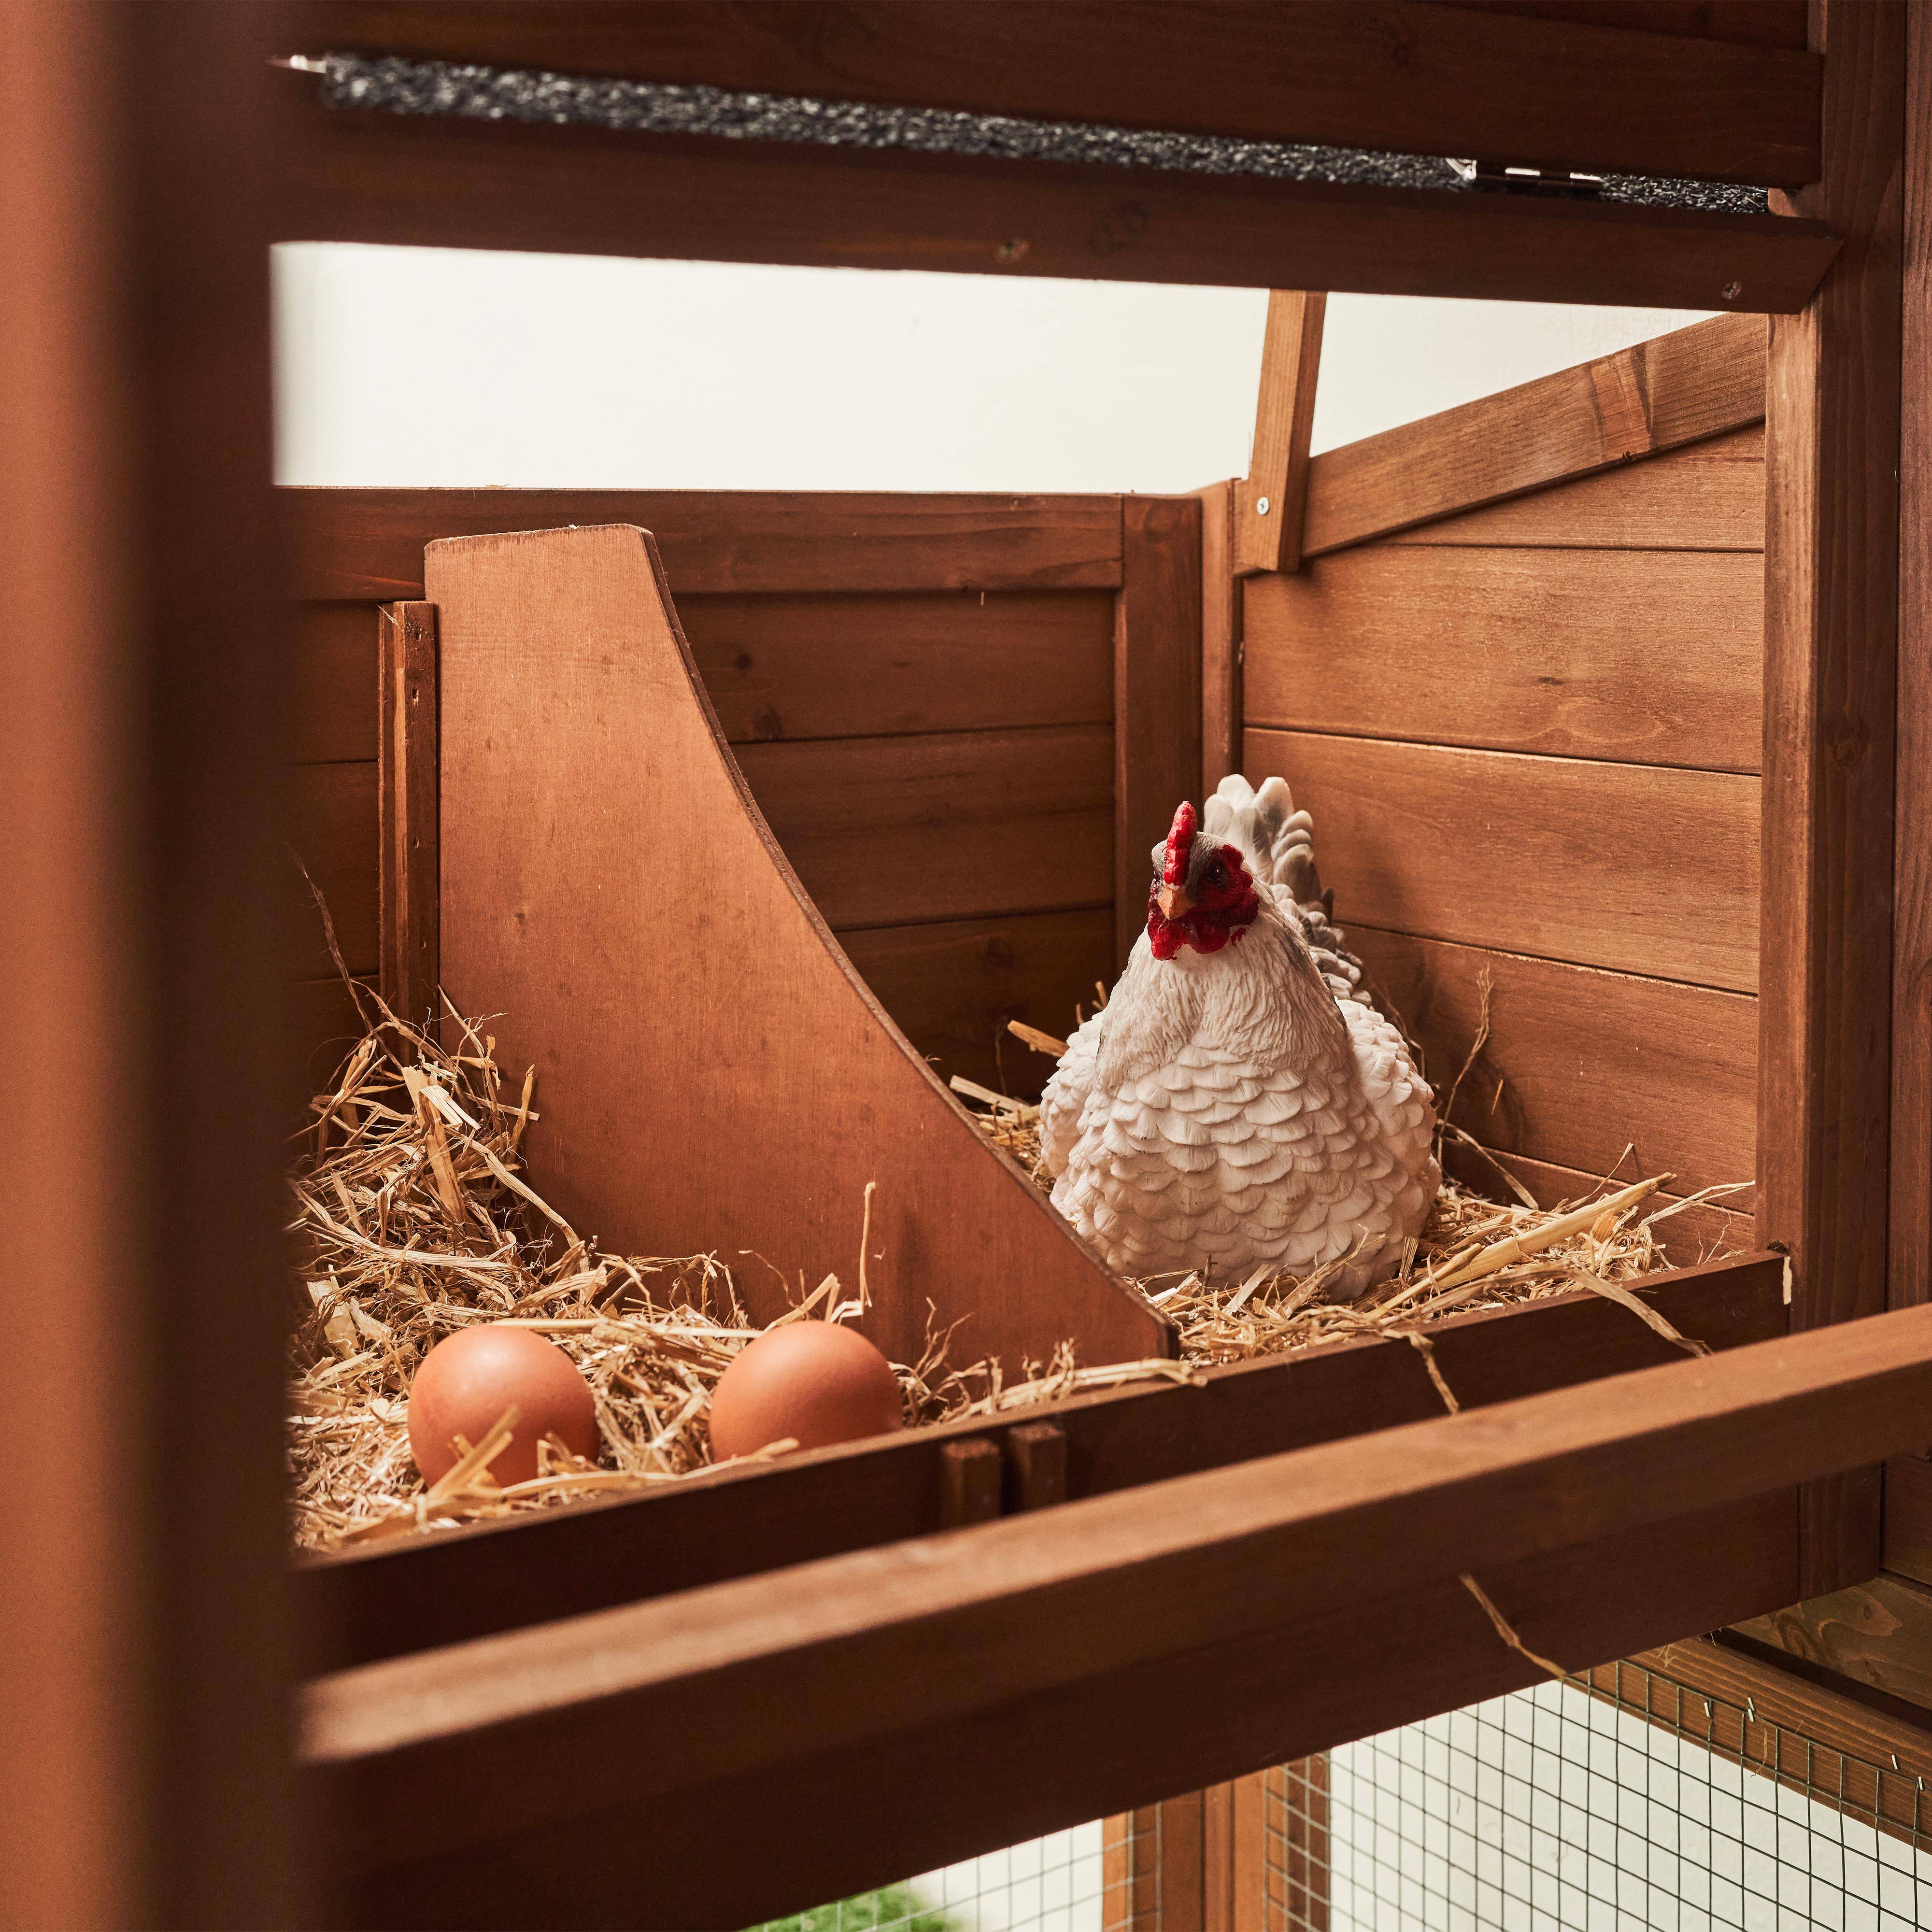 Gallinero exterior de madera para jaula de pollos